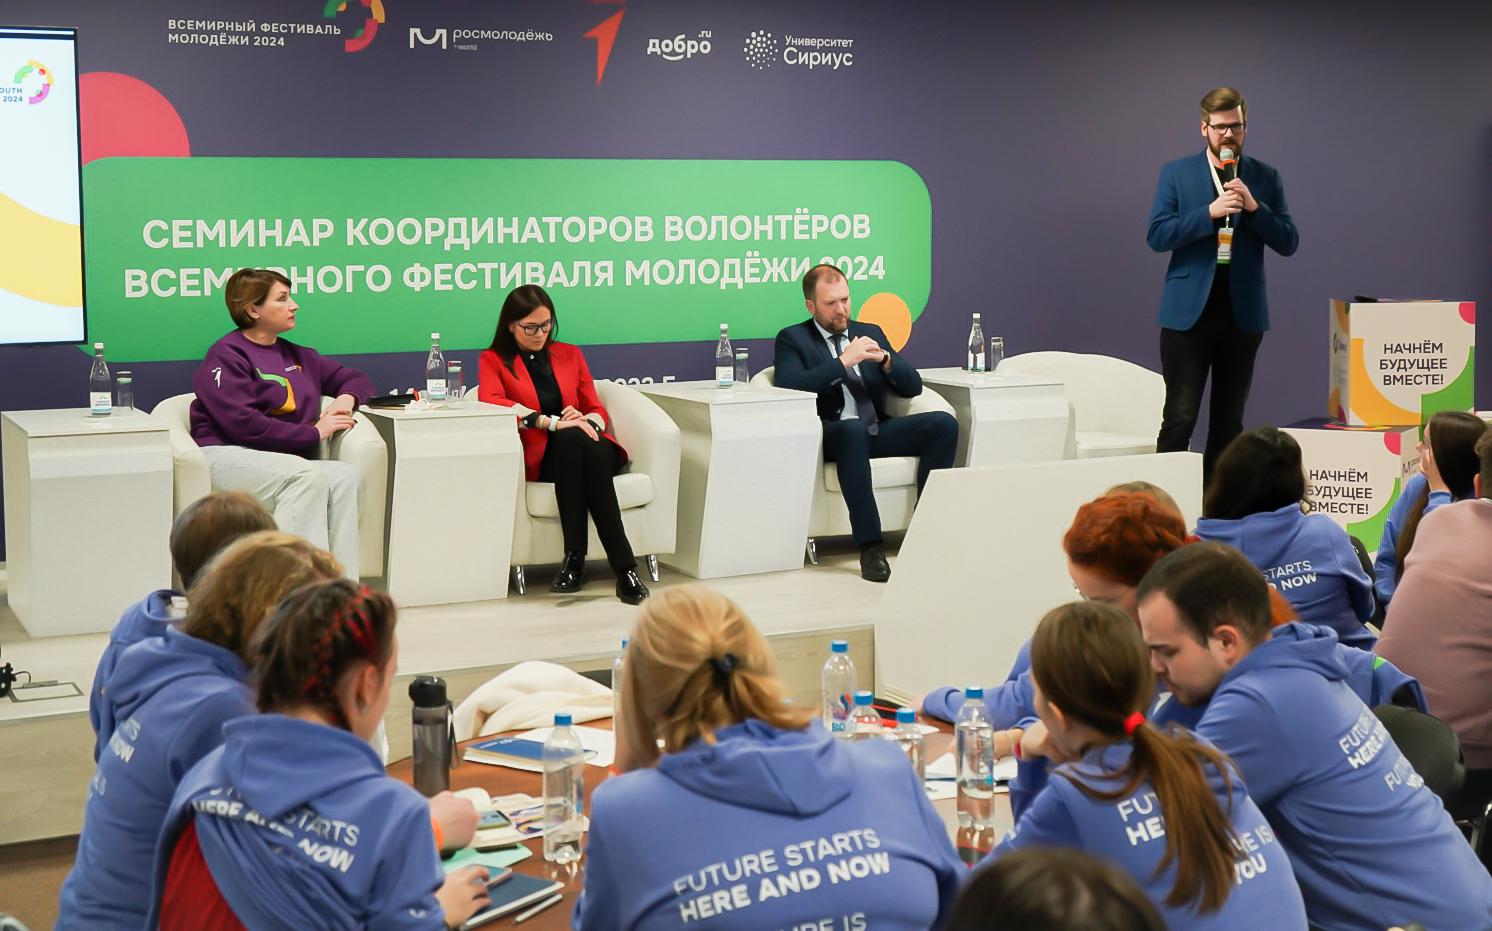 Представители Волонтерского центра СПбГЭУ отправились на образовательный семинар в Сочи